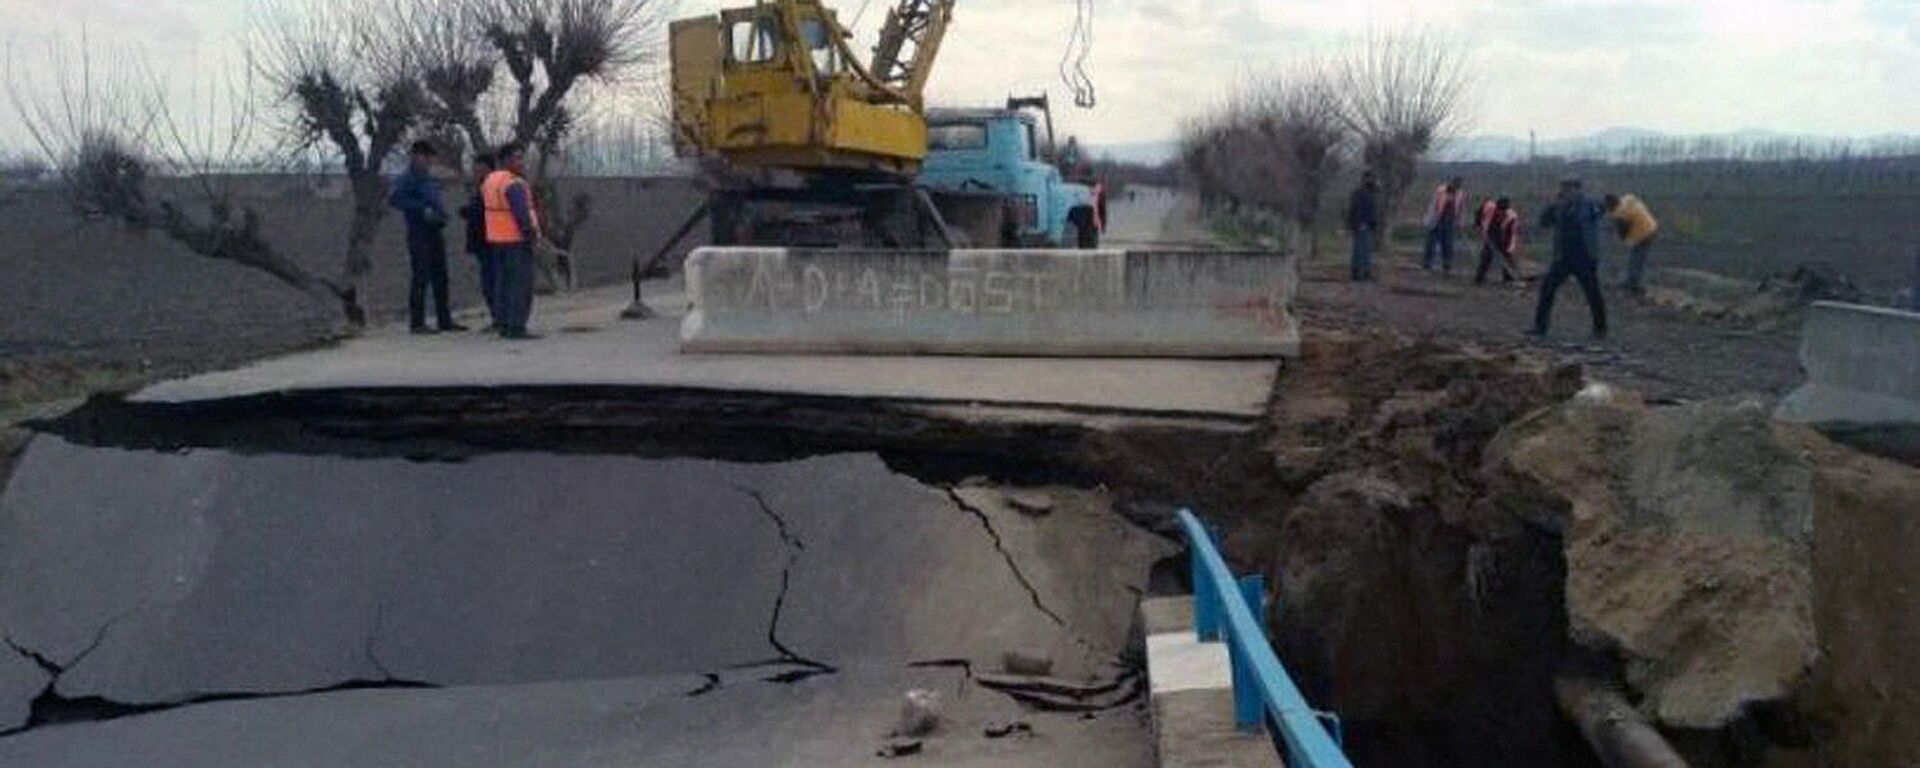 В результате непрерывных ливней, продолжавшихся два дня, разрушился небольшой мост в Самаркандской области - Sputnik Узбекистан, 1920, 01.04.2021